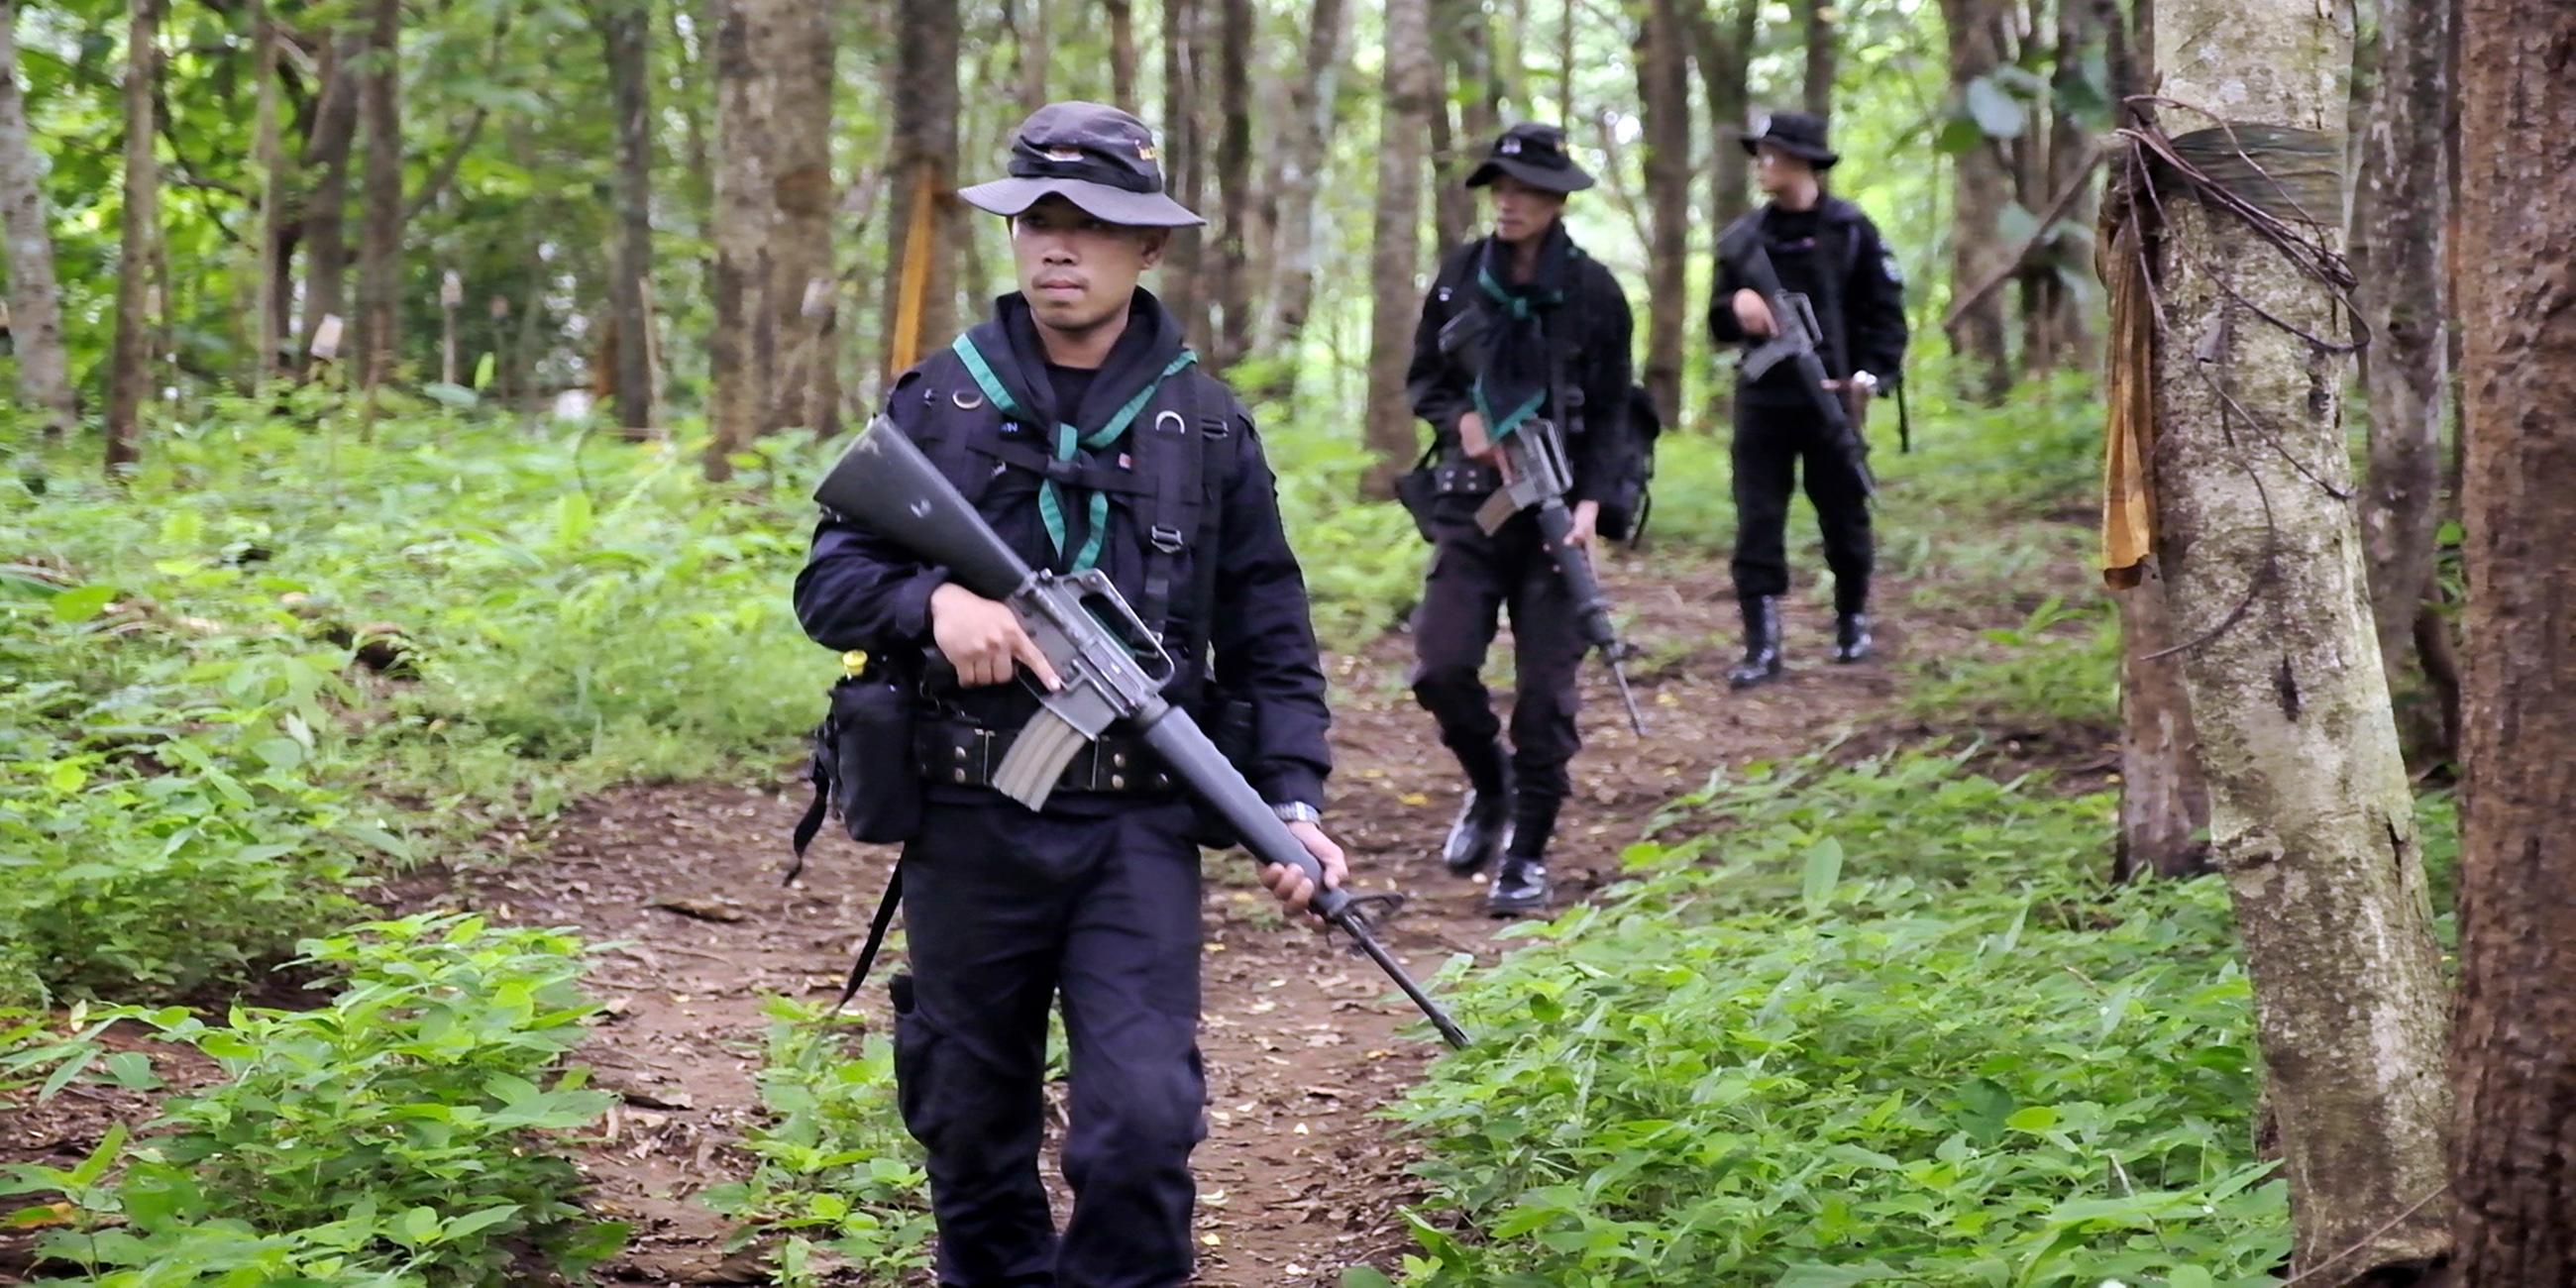 Drei Männer mit Hüten und schwarzen Uniformen laufen hintereinander über einen Waldweg. Alle drei halten schwere Maschinengewehre in den Händen.